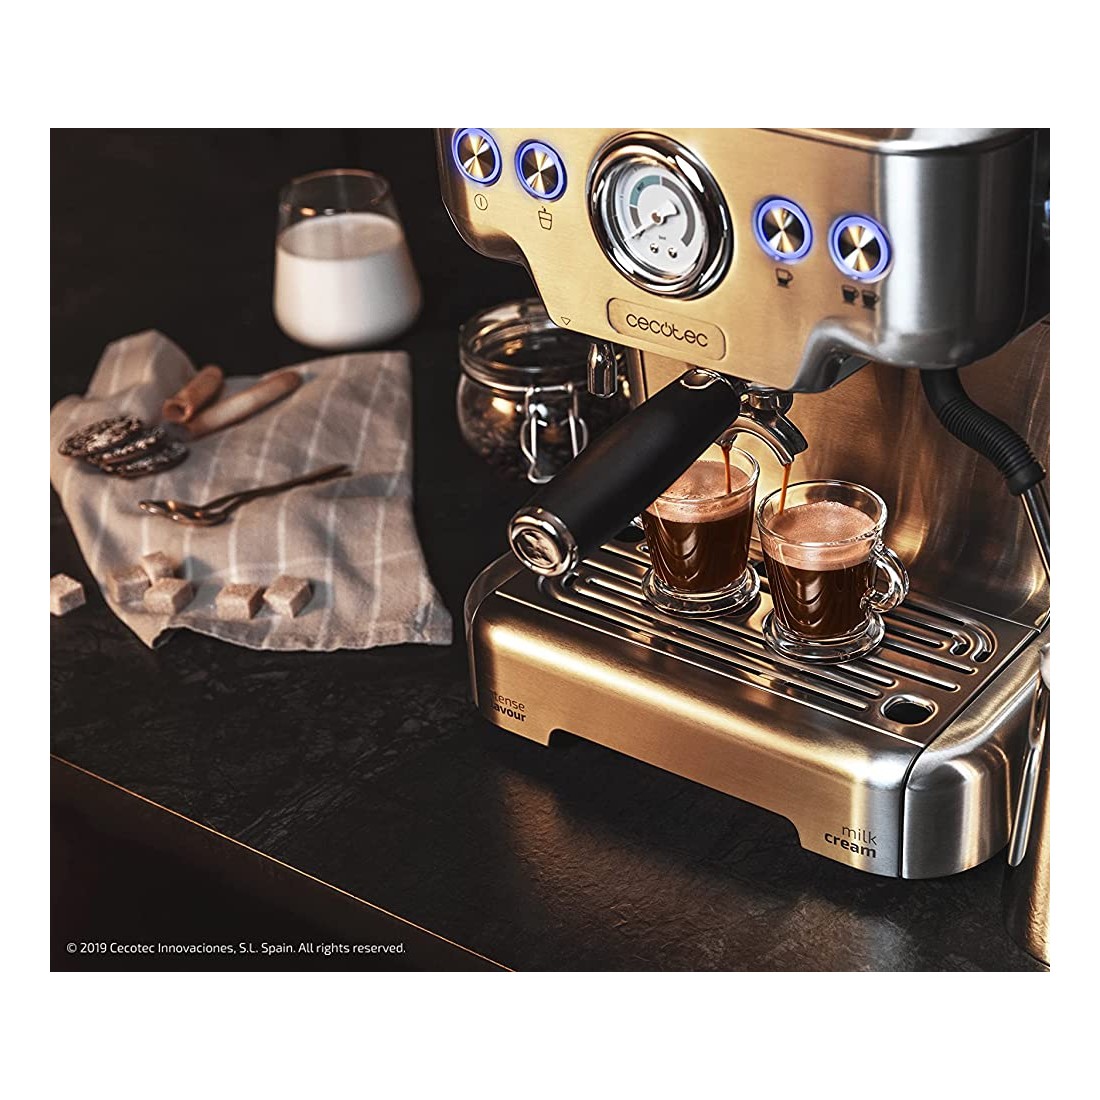 .es:Opiniones de clientes: Cecotec Cafetera Express Power Espresso 20  Tradizionale para espressos y cappuccinos, ráp…